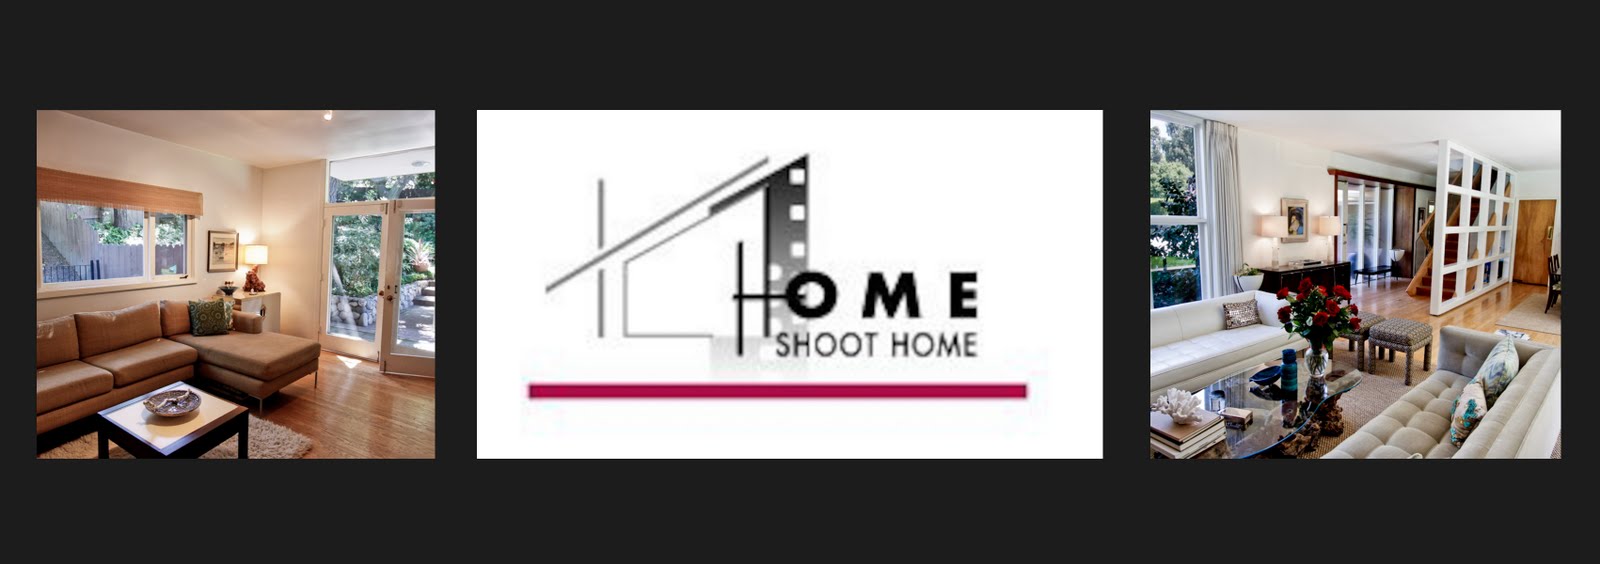 Home Shoot Home